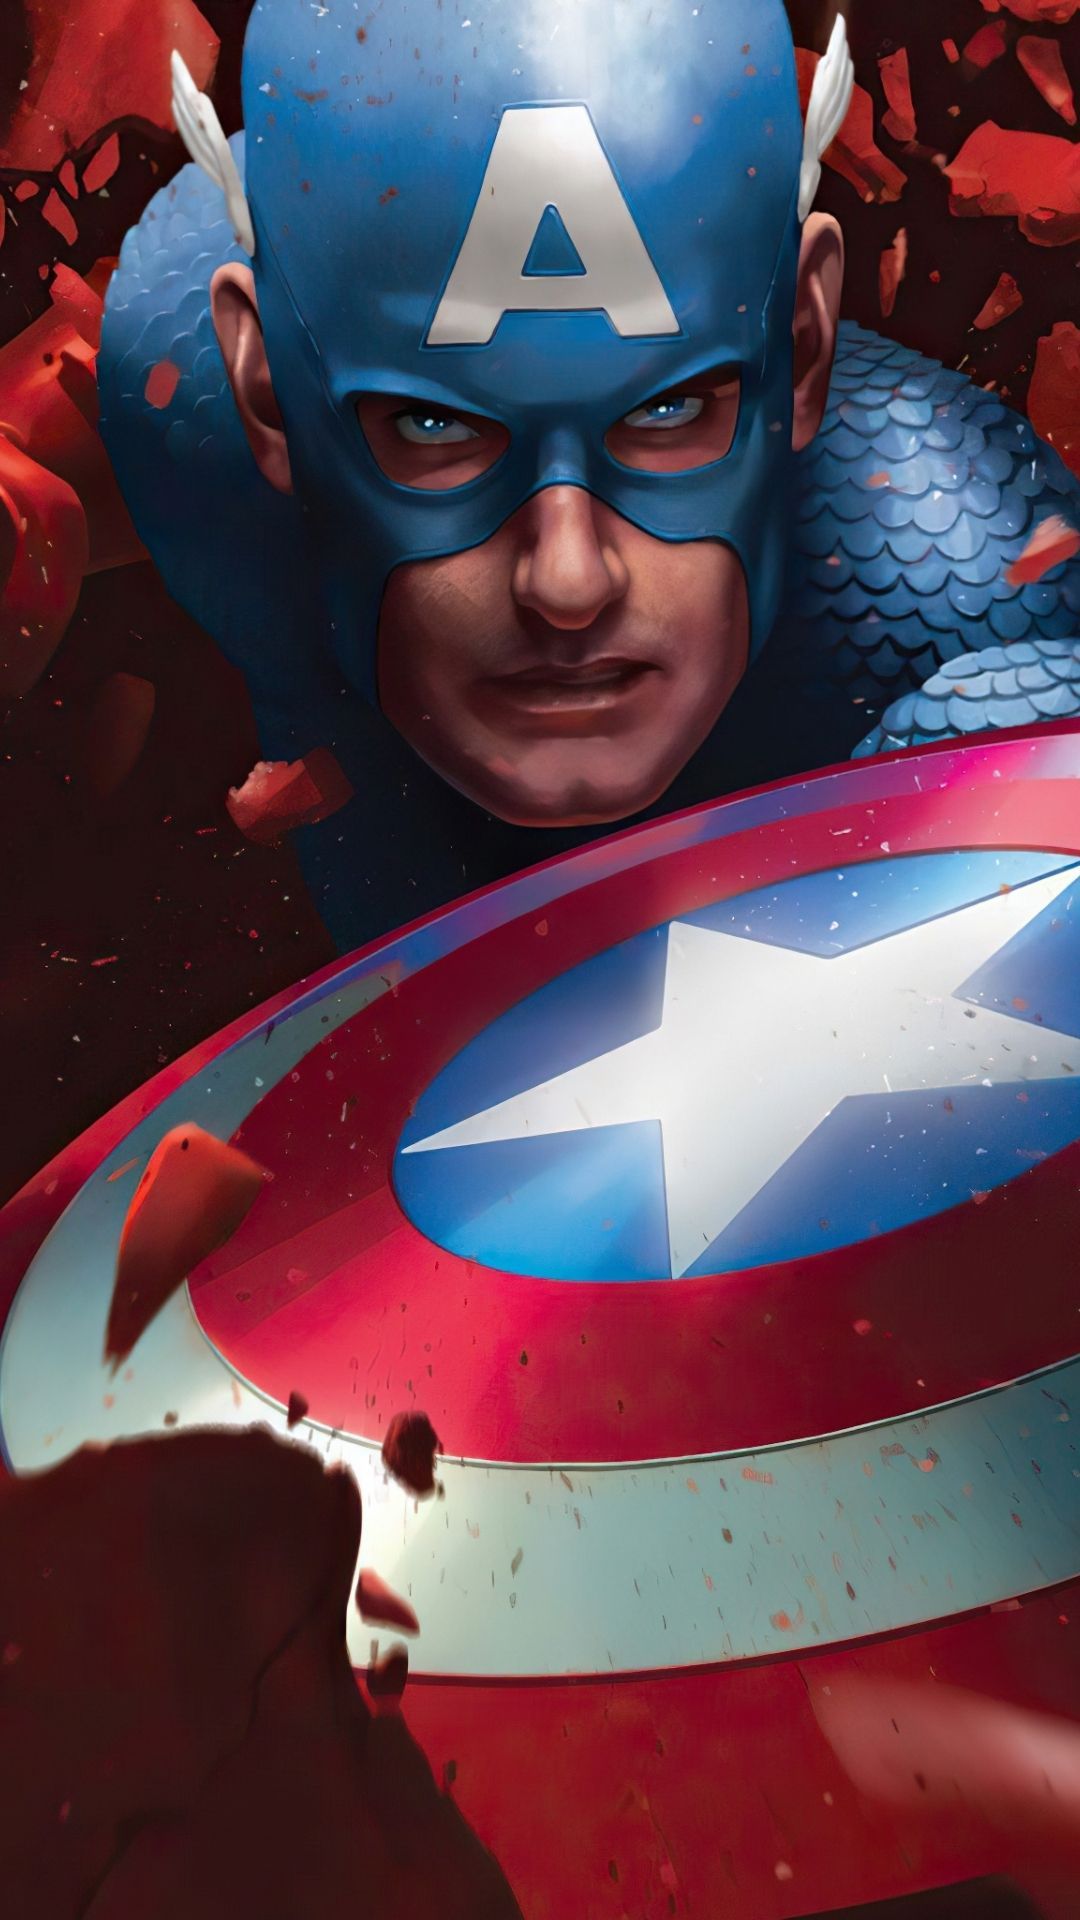 Avengers, Captain America wallpaper. Captain america wallpaper, Captain america, Superhero wallpaper